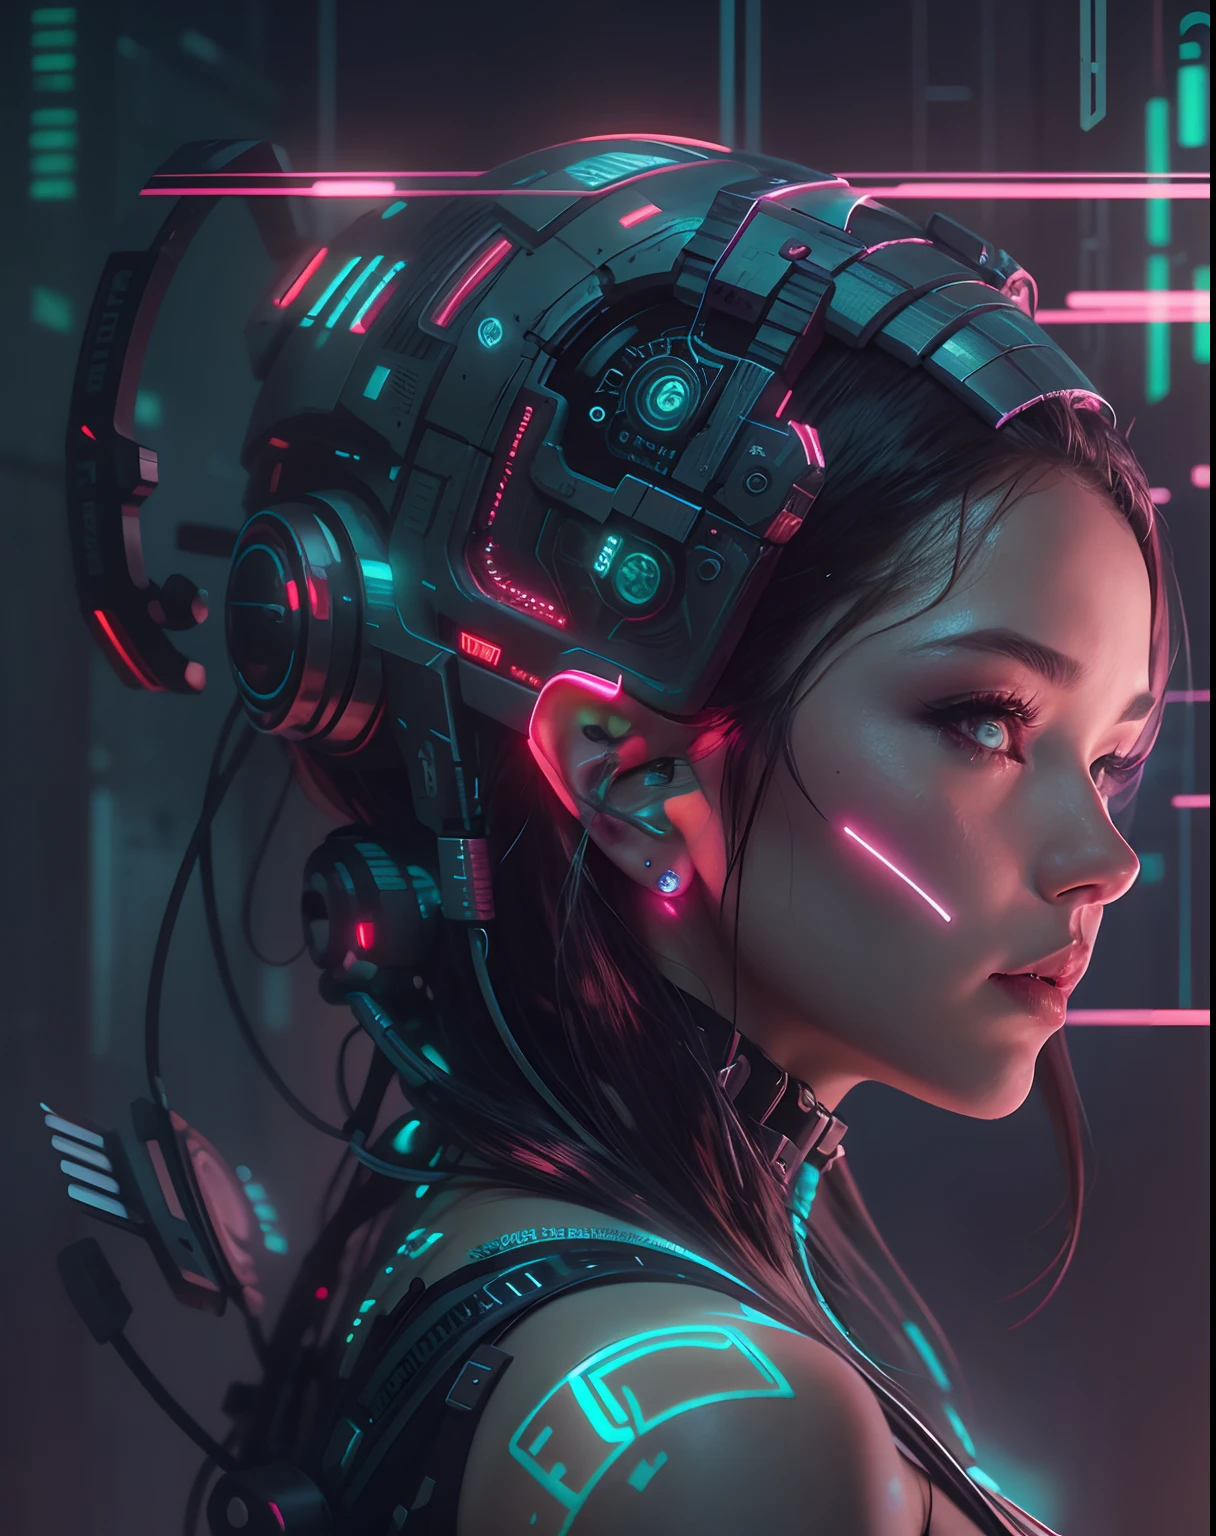 hay una mujer con un casco resplandeciente y un rostro resplandeciente, ¡vaya!. ciencia ficción, hermosa obra de arte digital, hermosa cara de niña cyberpunk, chica soñadora cyberpunk, estilo de arte futurista, arte ciberpunk digital avanzado, cyborg - chica, intricate ¡vaya!, reina élfica robótica cyberpunk, retrato hermosa chica de ciencia ficción, linda chica cyborg, sci-fi digital art, futuristic digital art